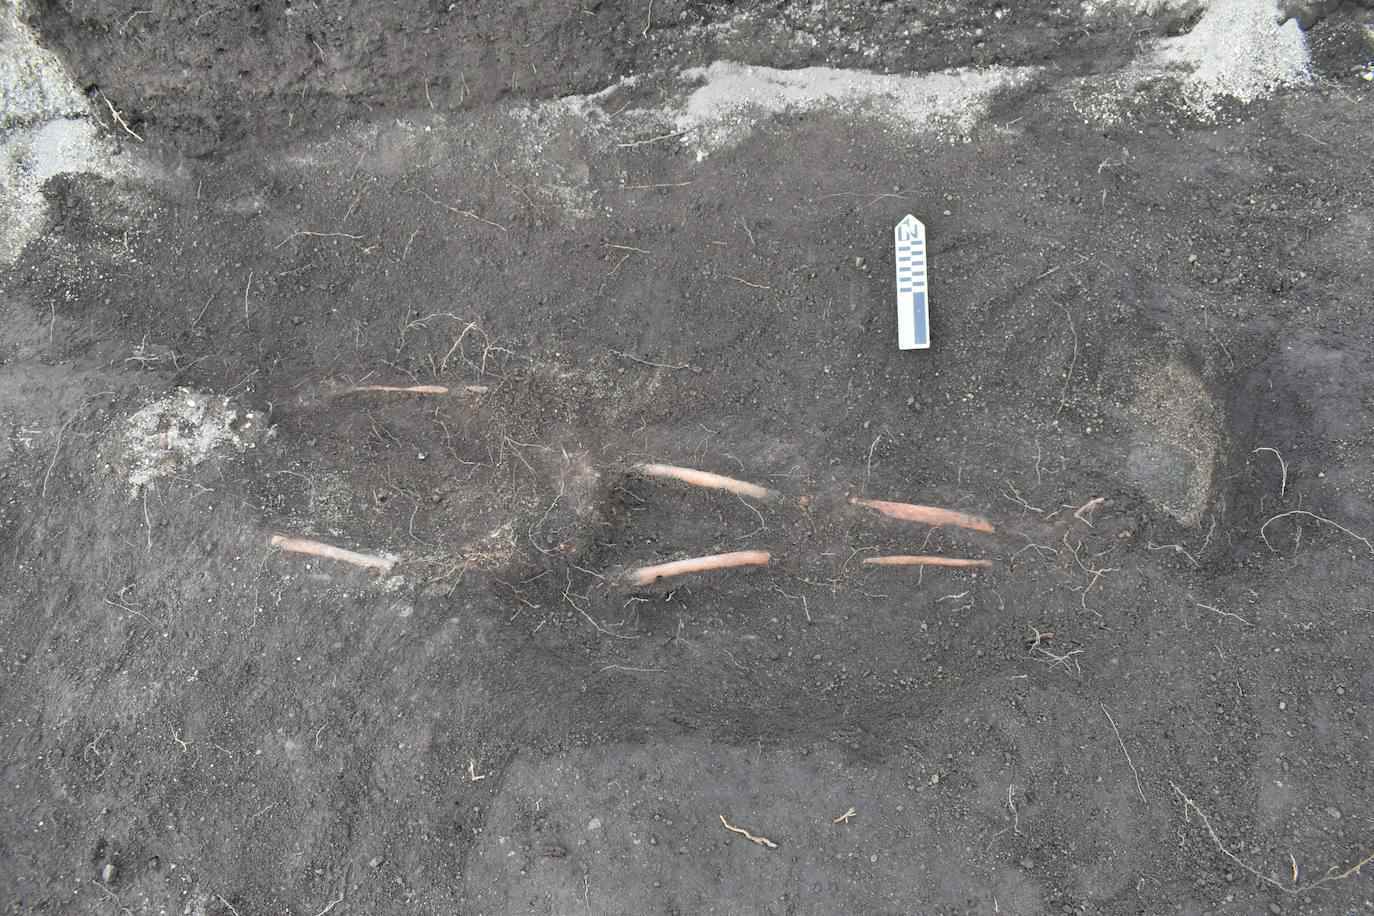 Los restos, que datan de cinco siglos, fueron encontrados en Mulaló, una de las diez parroquias rurales del cantón Latacunga, a 2,900 metros de altitud (EFE / Byron Ortiz / Proyecto Arqueológico Mulaló - Salatilín).